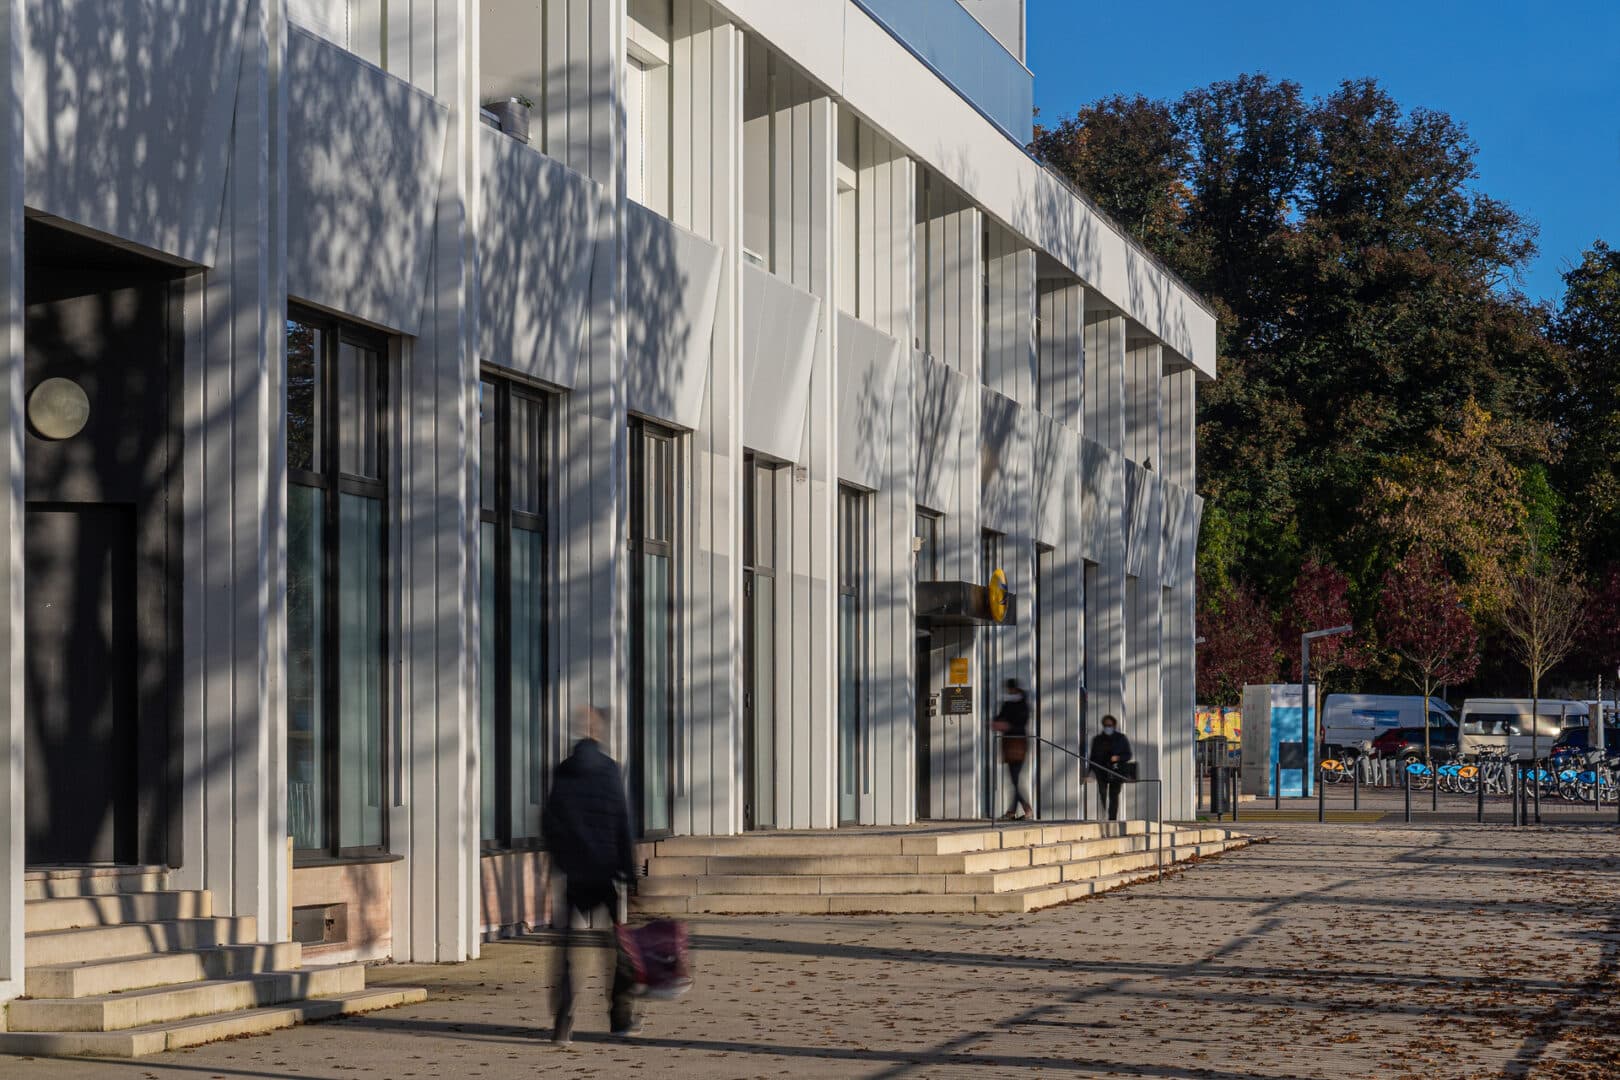 Vue extérieure du bâtiment moderne Le Cosmopolitain avec des façades en panneaux blancs et des fenêtres verticales. Des ombres d'arbres se projettent sur le bâtiment par une journée ensoleillée, tandis qu'une personne marche le long du trottoir avec un sac.